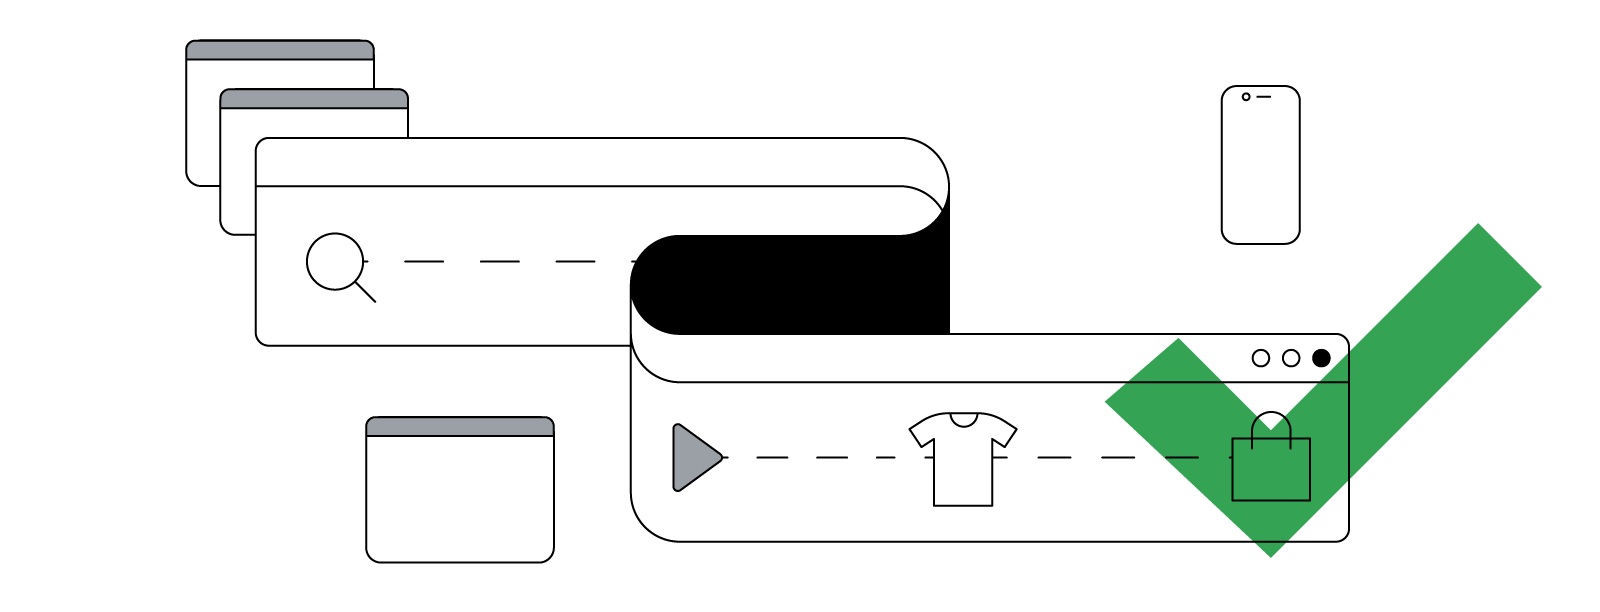 Eine abstrakte Illustration eines gebogenen Browserfensters, in dem der nicht lineare, geräteübergreifende Kaufprozess von der Recherche bis zur Conversion zu sehen ist.